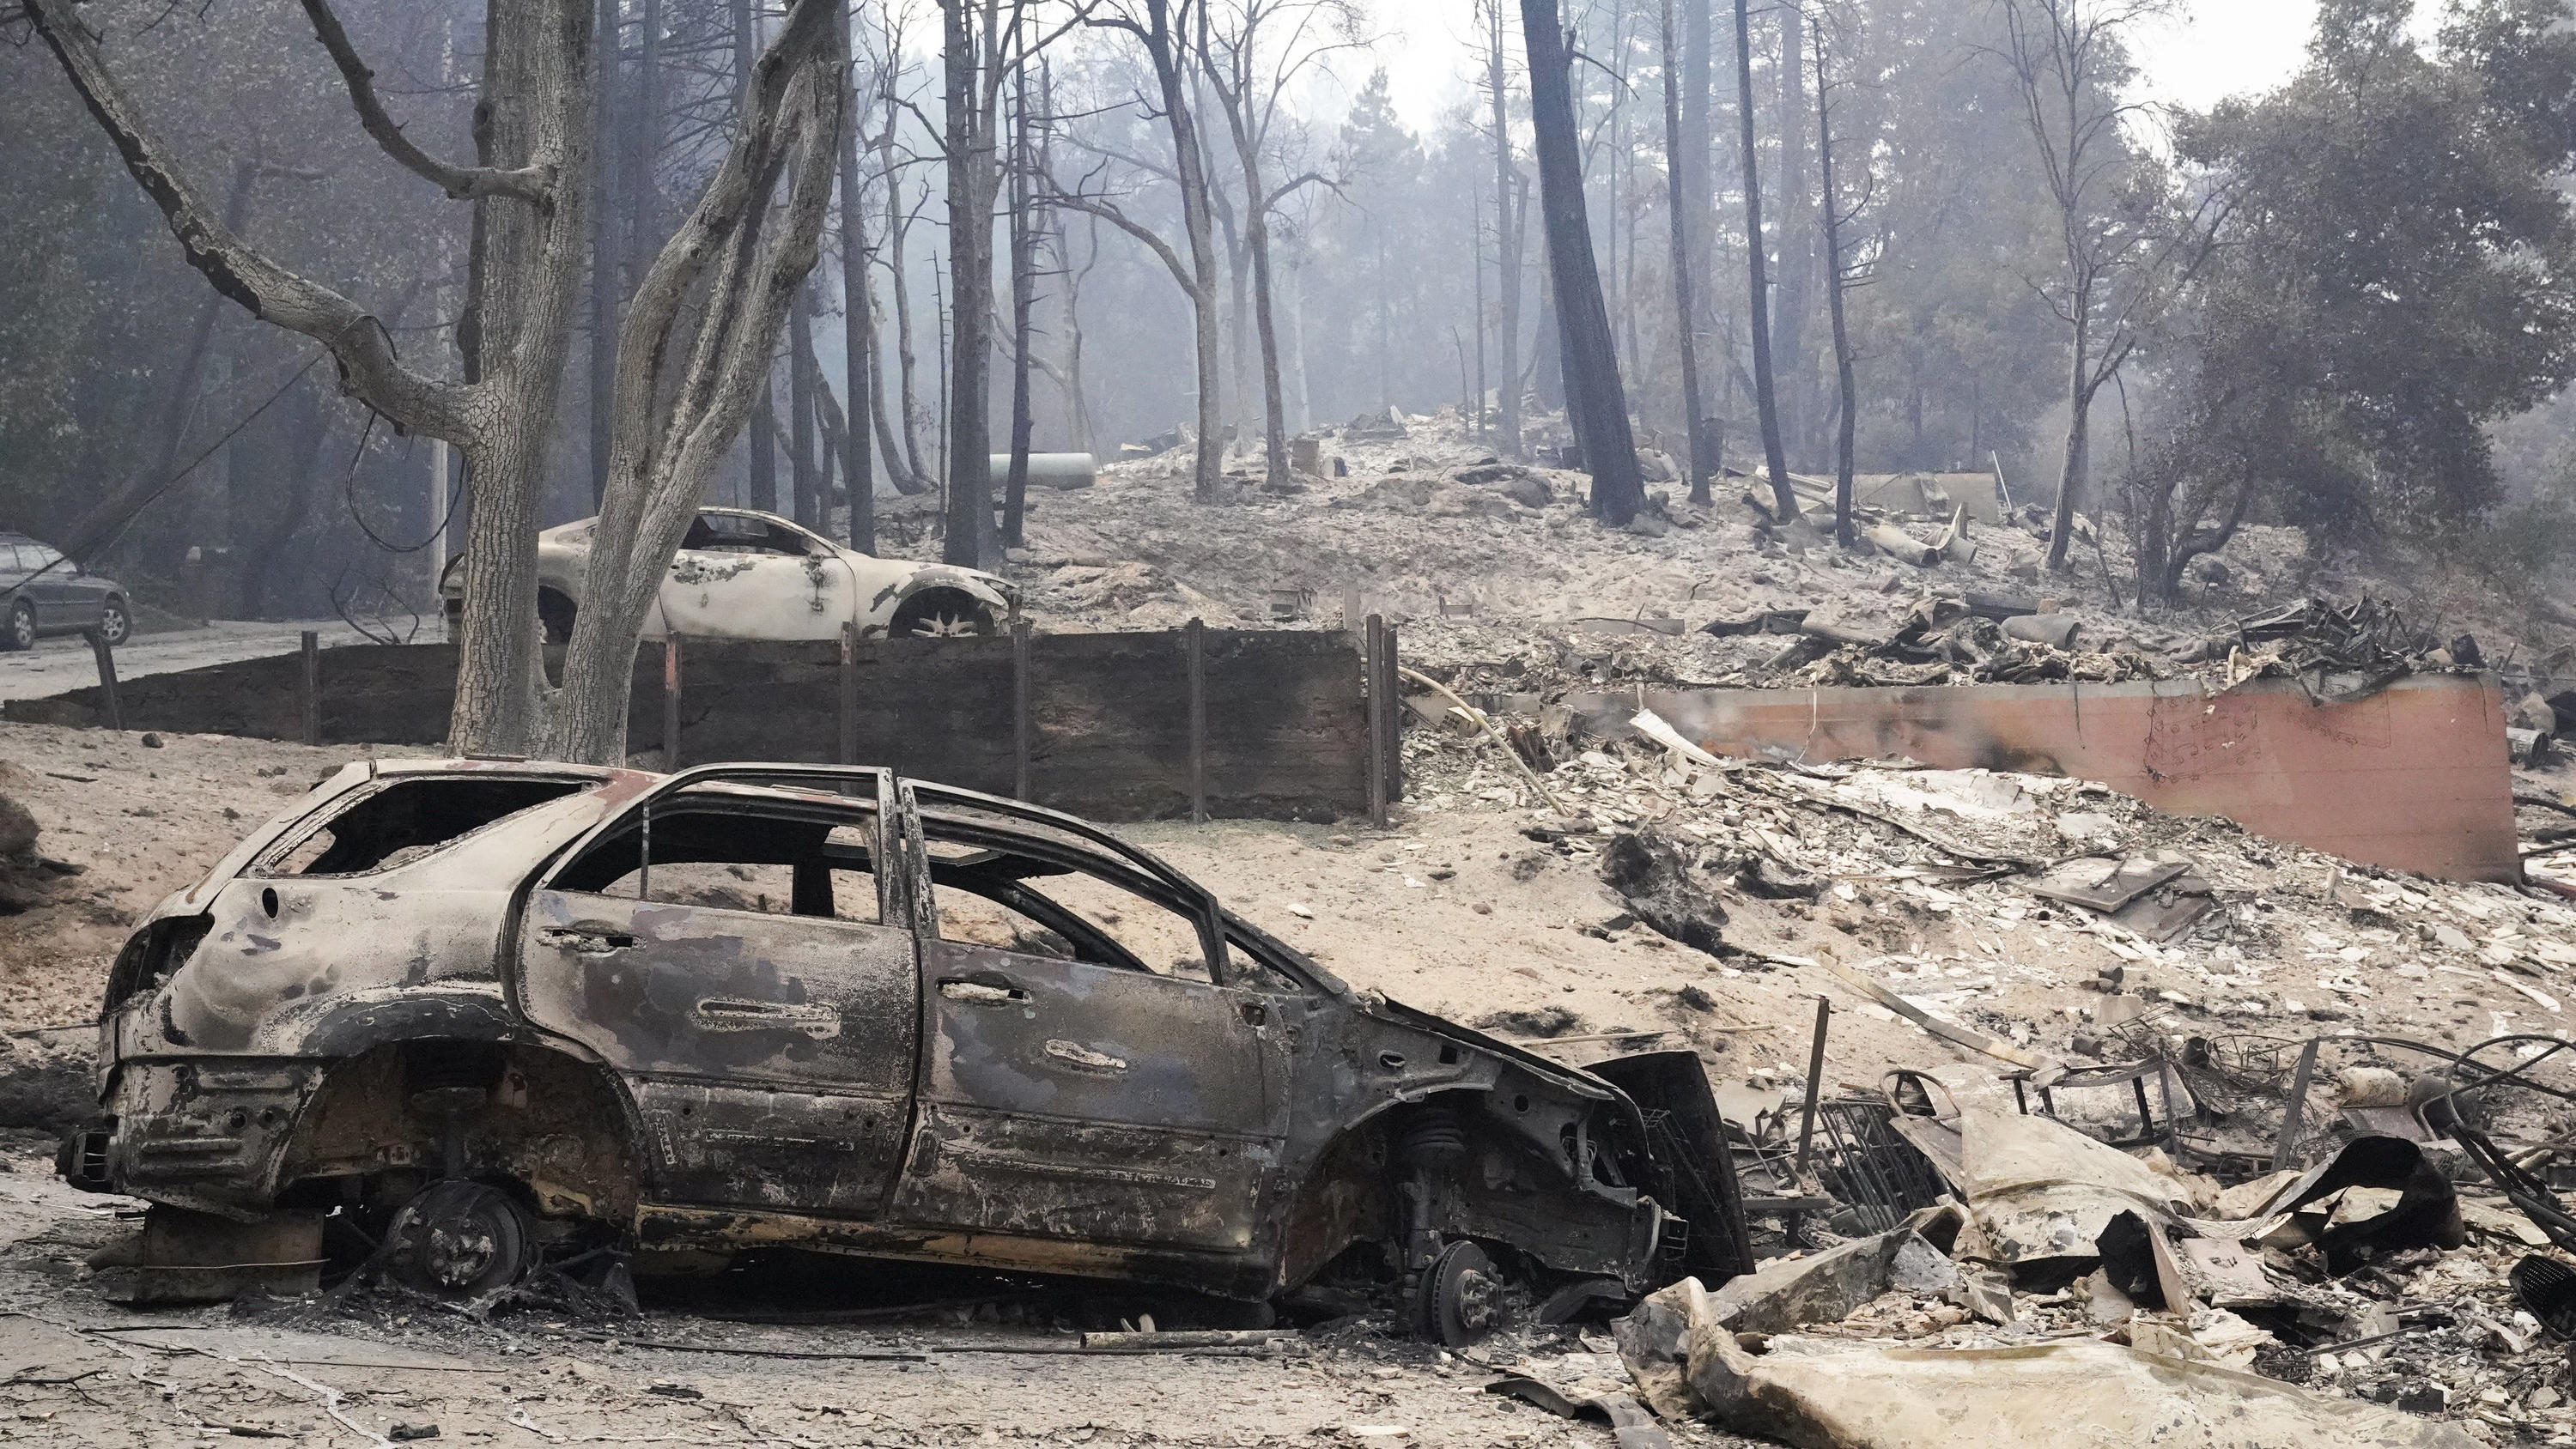 23.08.2020, USA, Boulder Creek: Ein verkohltes Fahrzeug steht nach den verheerenden Waldbränden in Kalifornien neben einem völlig zerstörtem Haus. Nach heftigen Unwettern mit mehr als 12 000 Blitzeinschlägen haben Brände im US-Bundesstaat Kalifornien